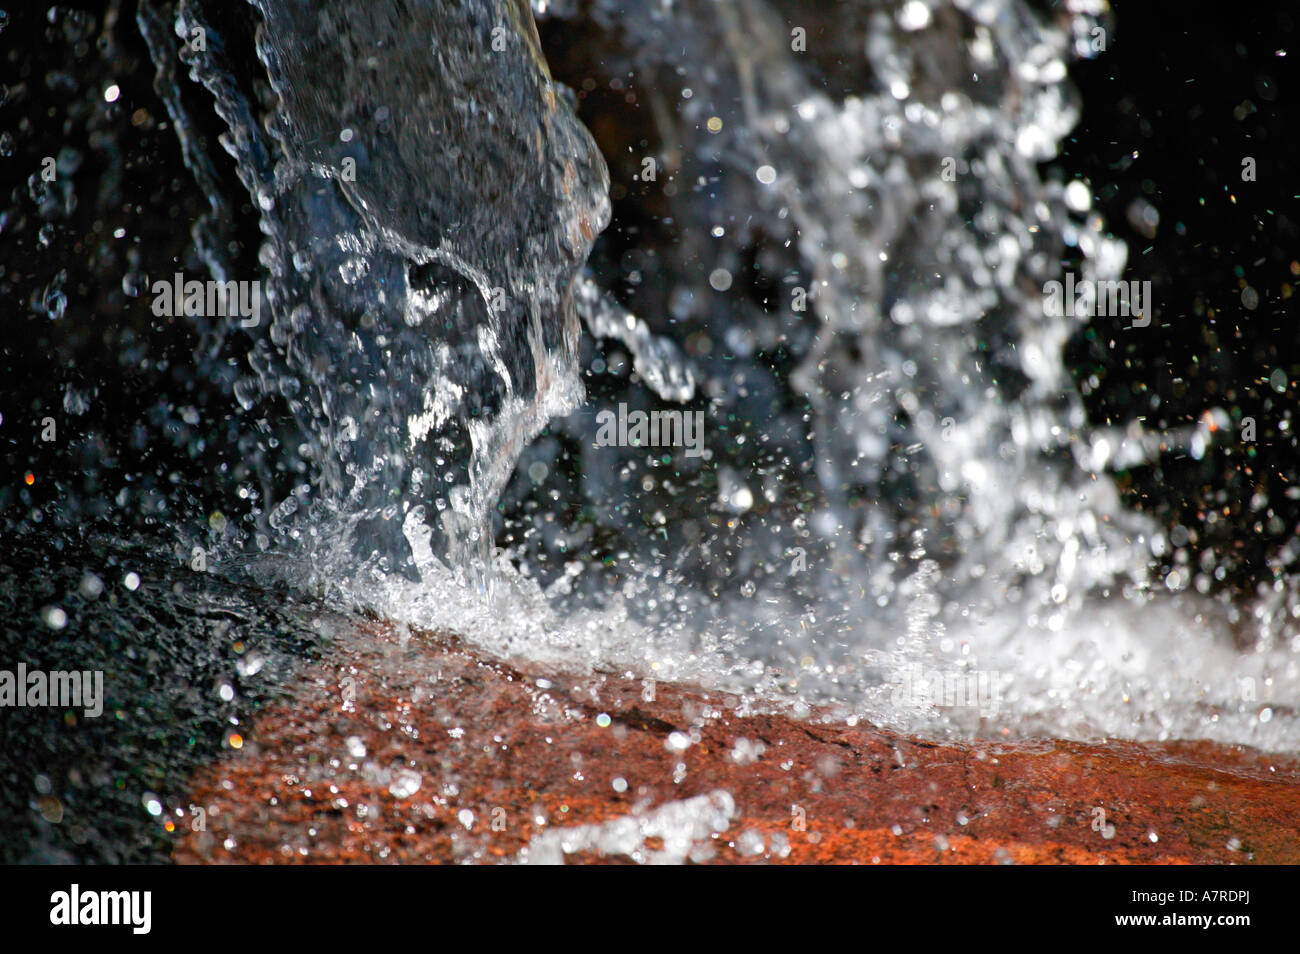 Les projections d'eau dans un ruisseau de montagne Waterberg province du Limpopo, Afrique du Sud Banque D'Images